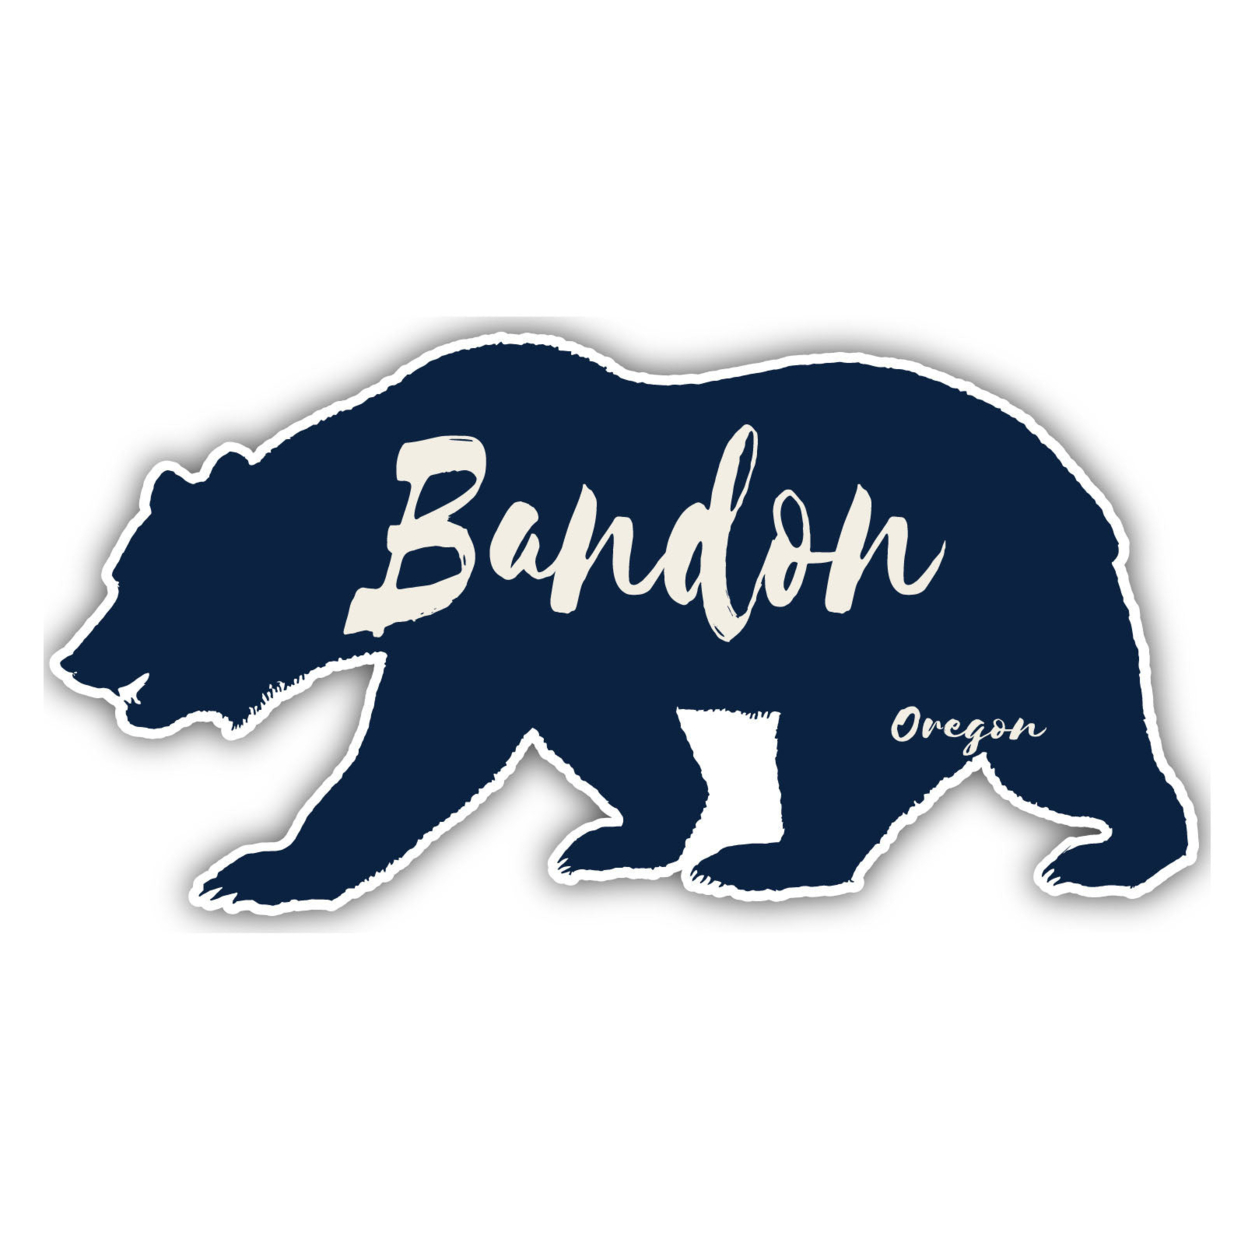 Bandon Oregon Souvenir Decorative Stickers (Choose Theme And Size) - Single Unit, 10-Inch, Tent